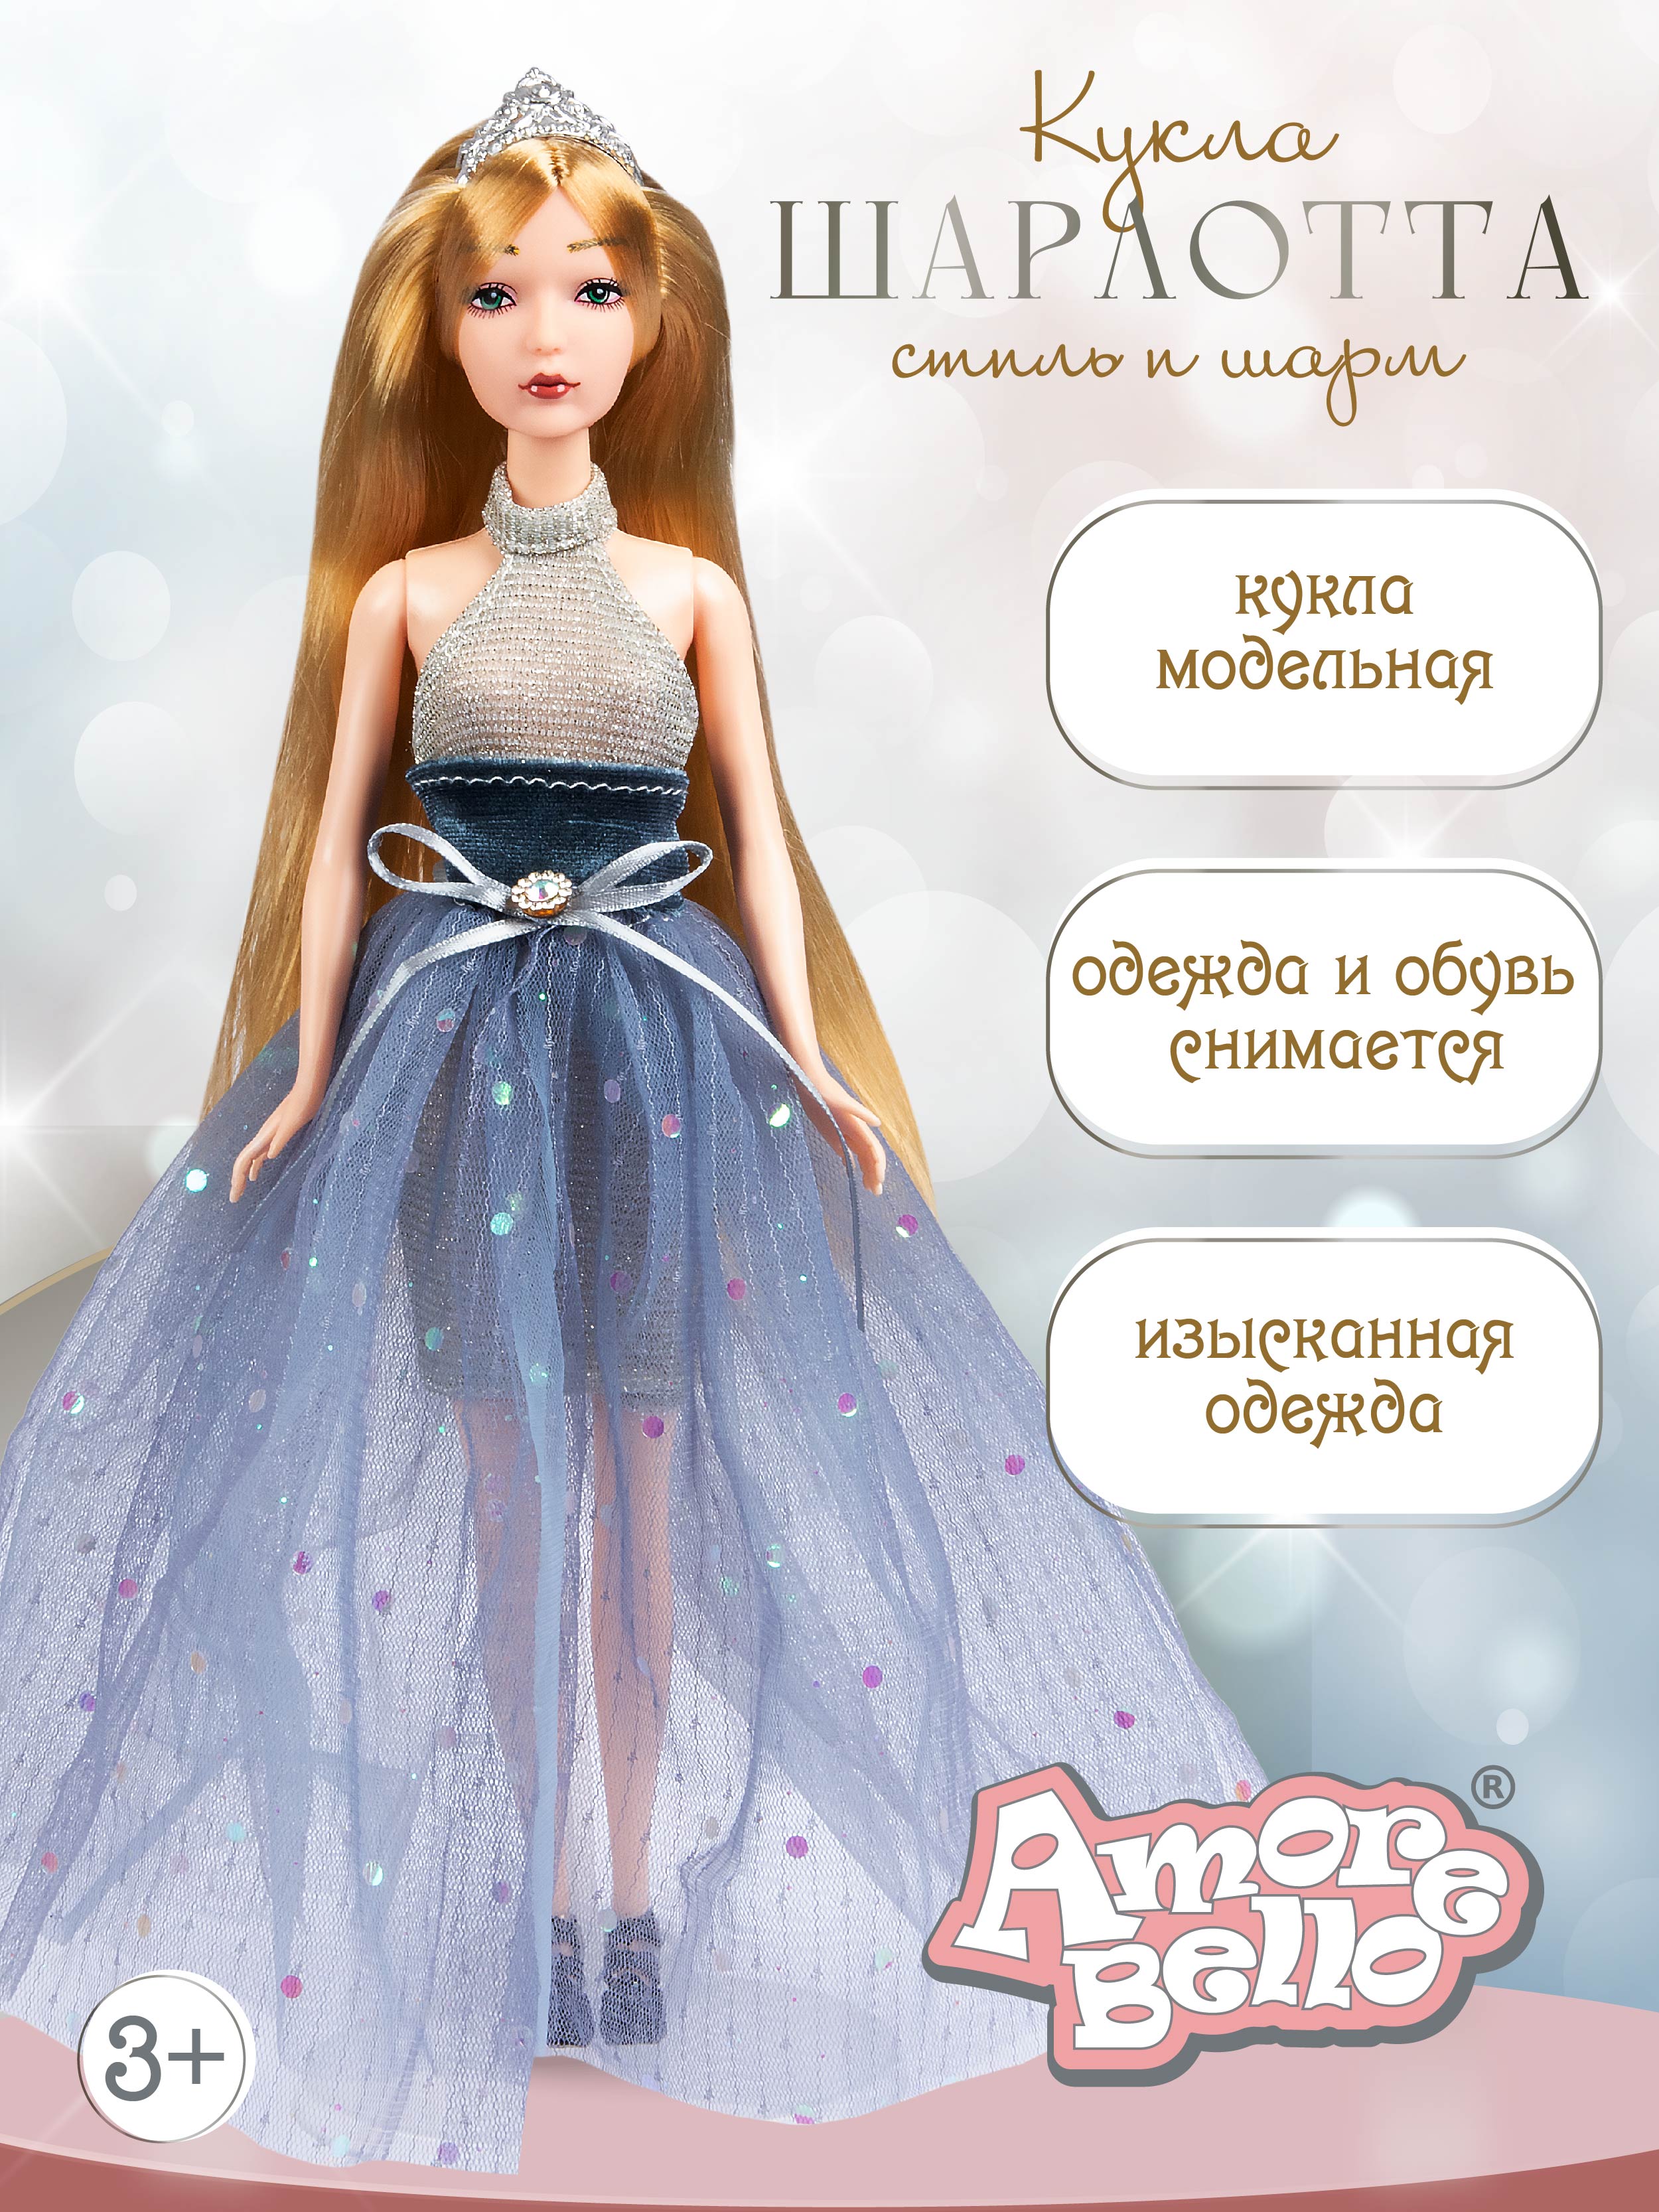 Кукла модельная Шарлота ТМ Amore Bello, подвижные элементы, подарочная упаковка, JB0211293